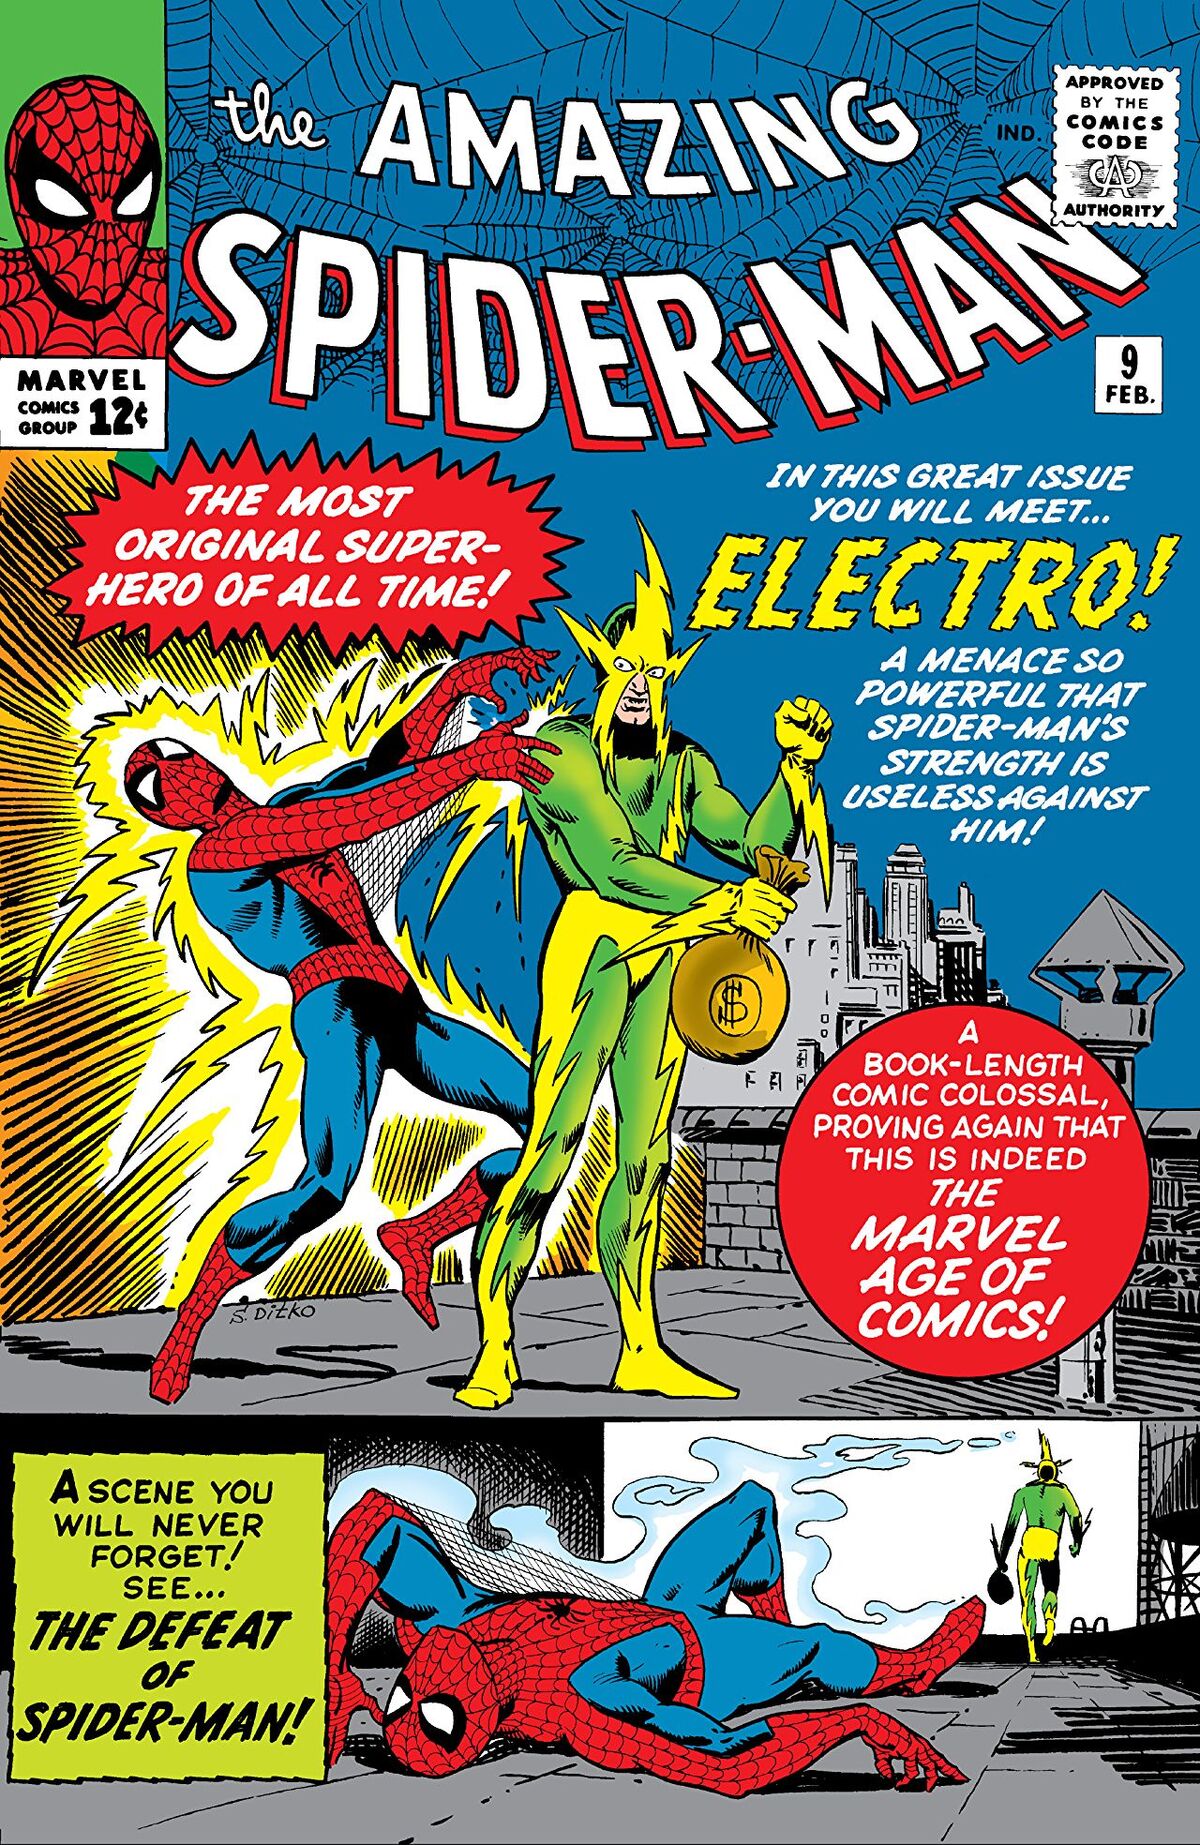 Amazing Spider-Man 9 | Headhunter's Holosuite Wiki | Fandom